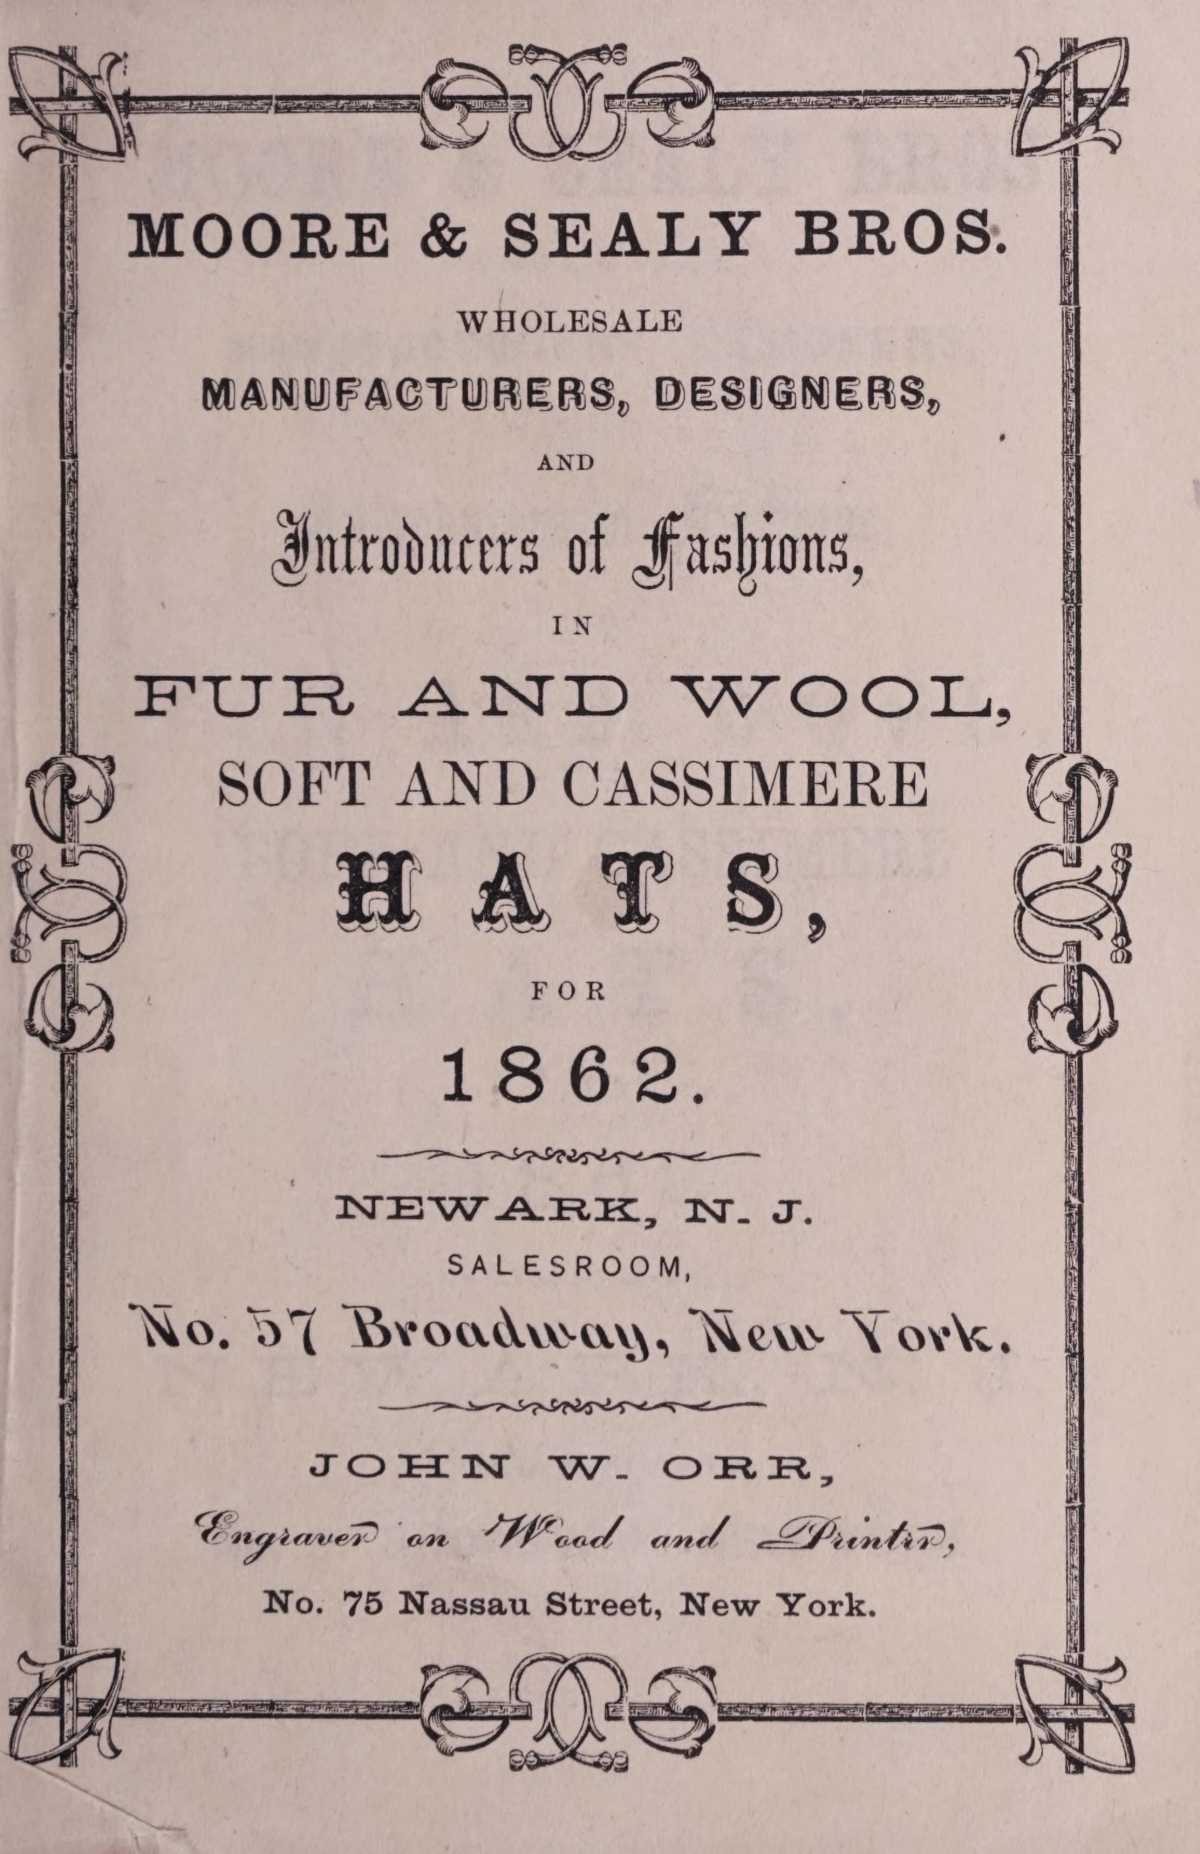 1860s men's hat catalog